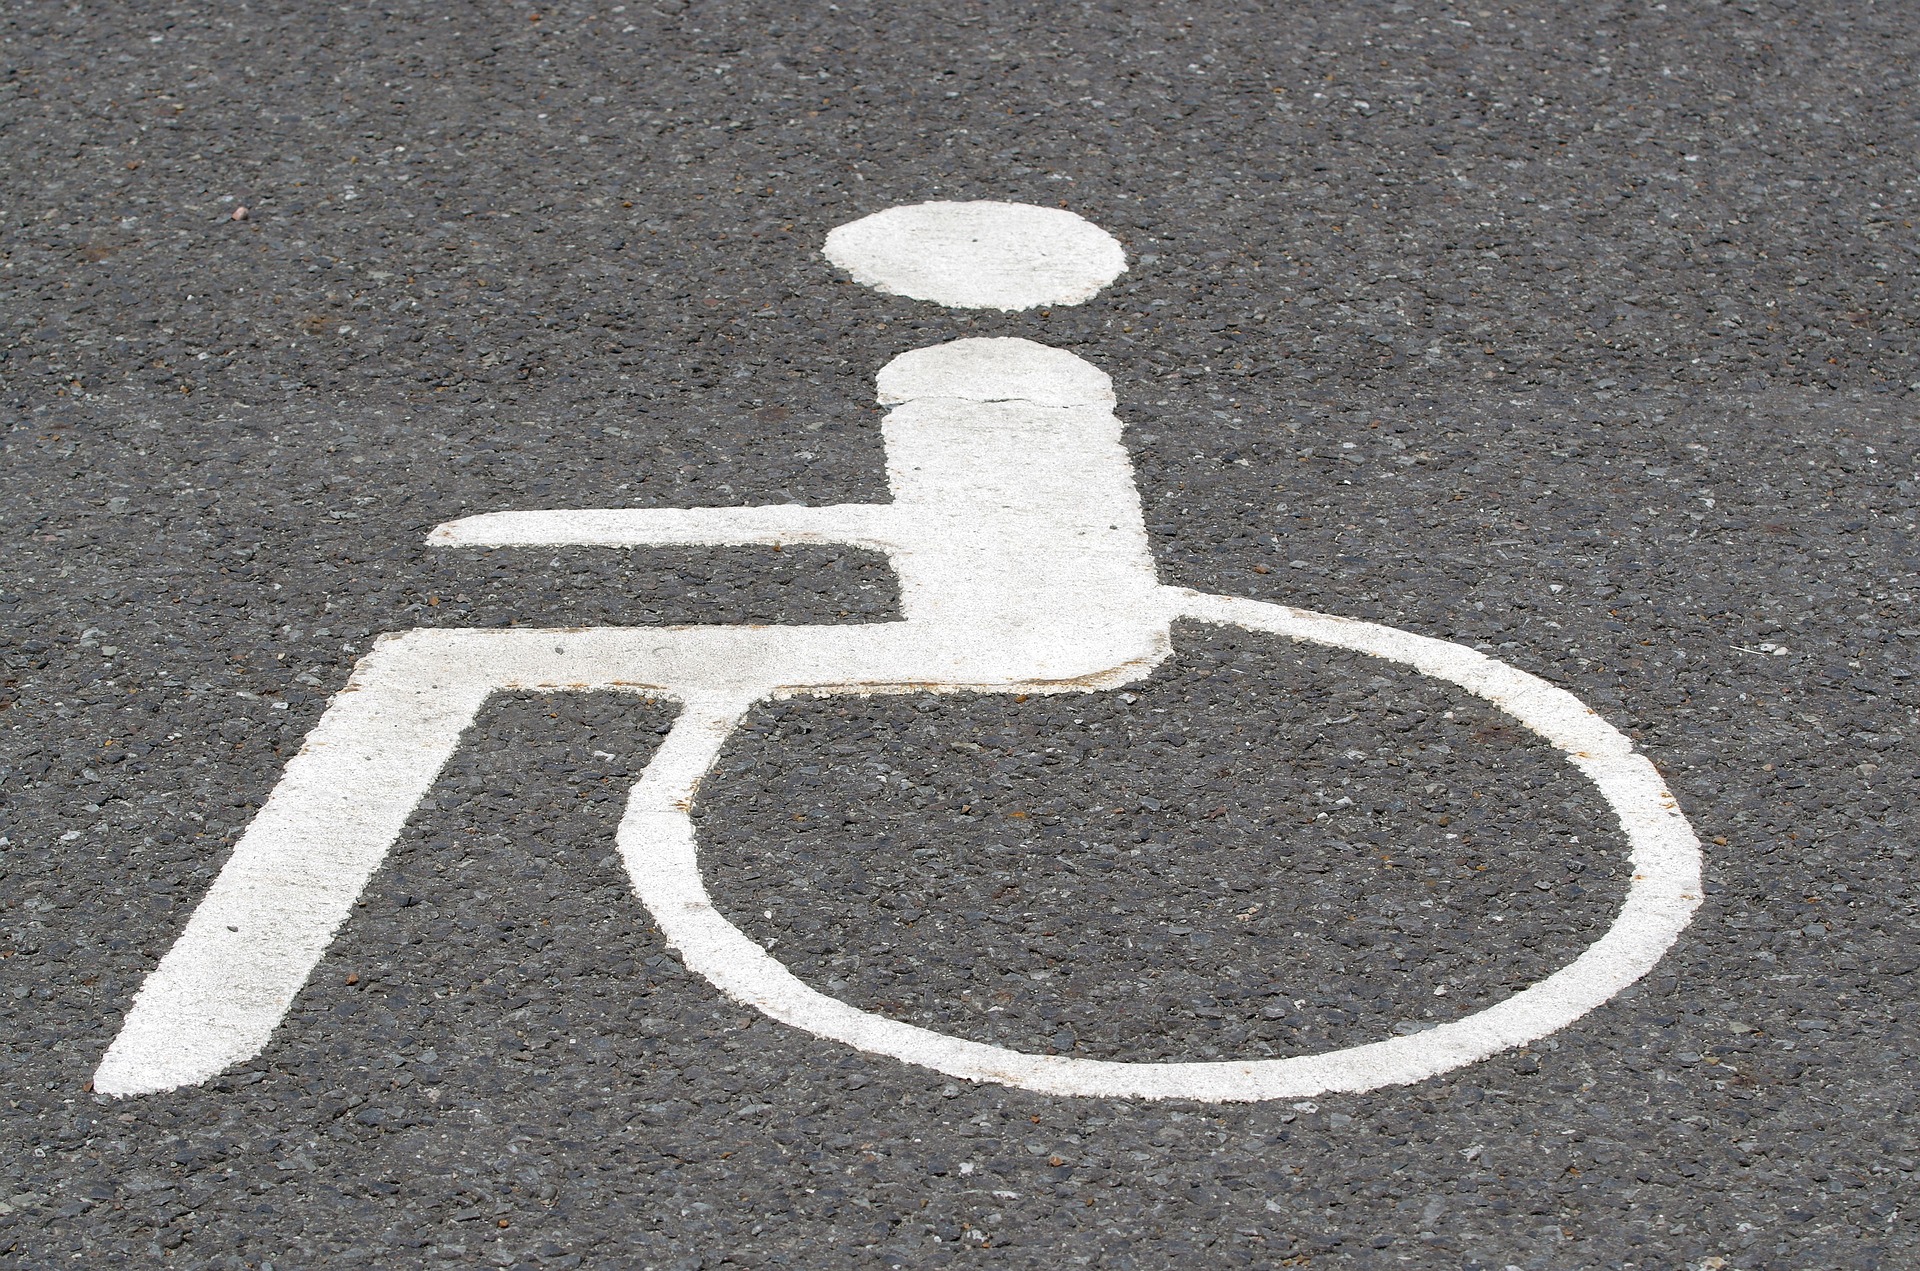 Srebrne Katowice - mapa dla osób z niepełnosprawnością (fot. Pixabay)